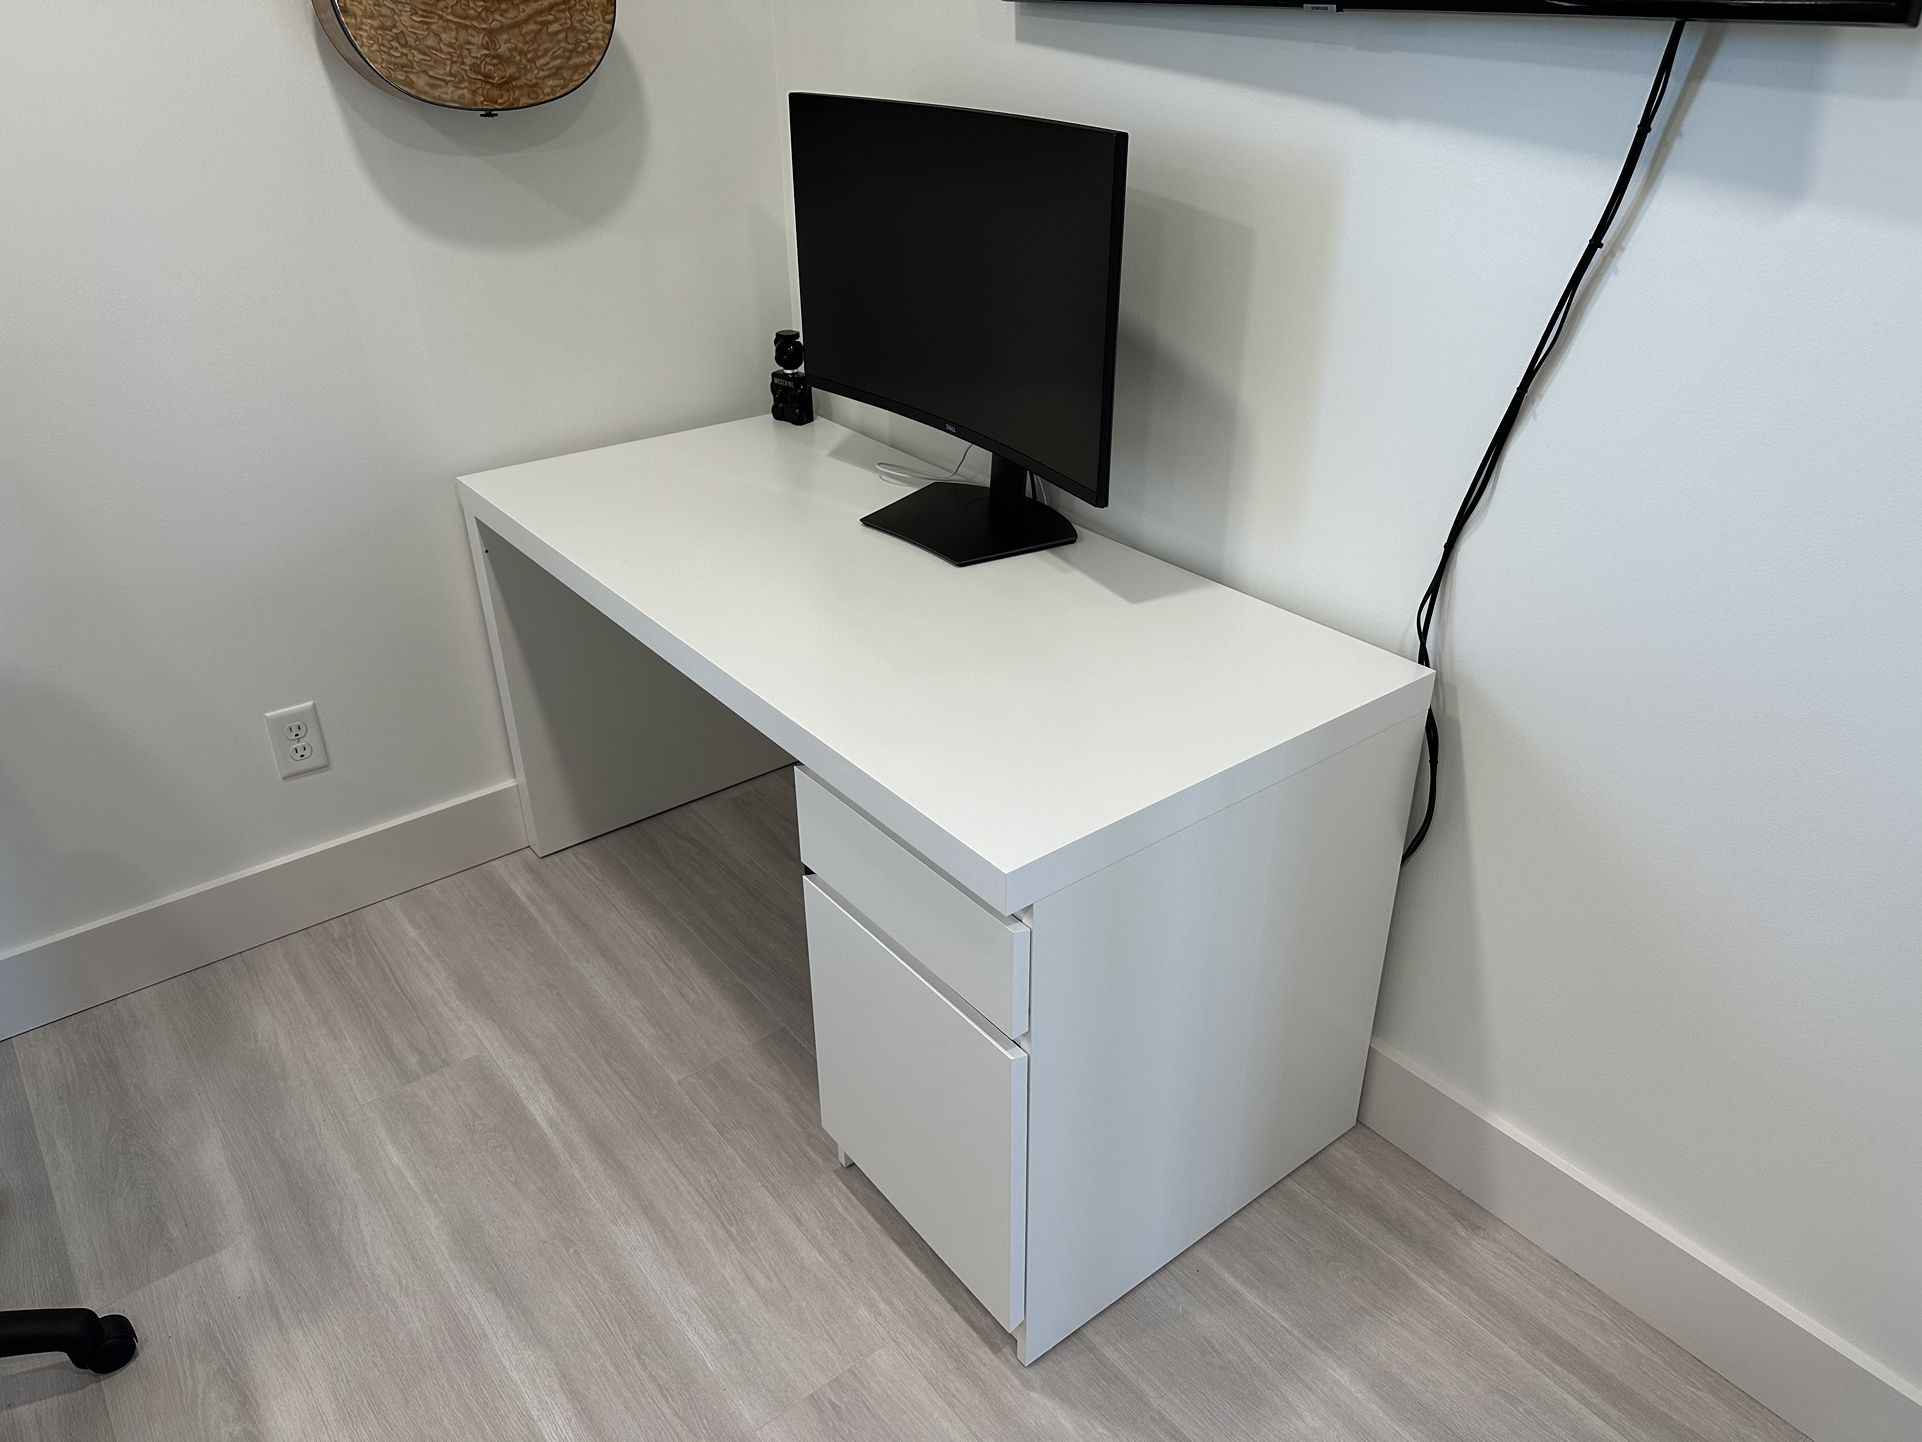 MALM Desk, white, 55 1/8x25 5/8 "